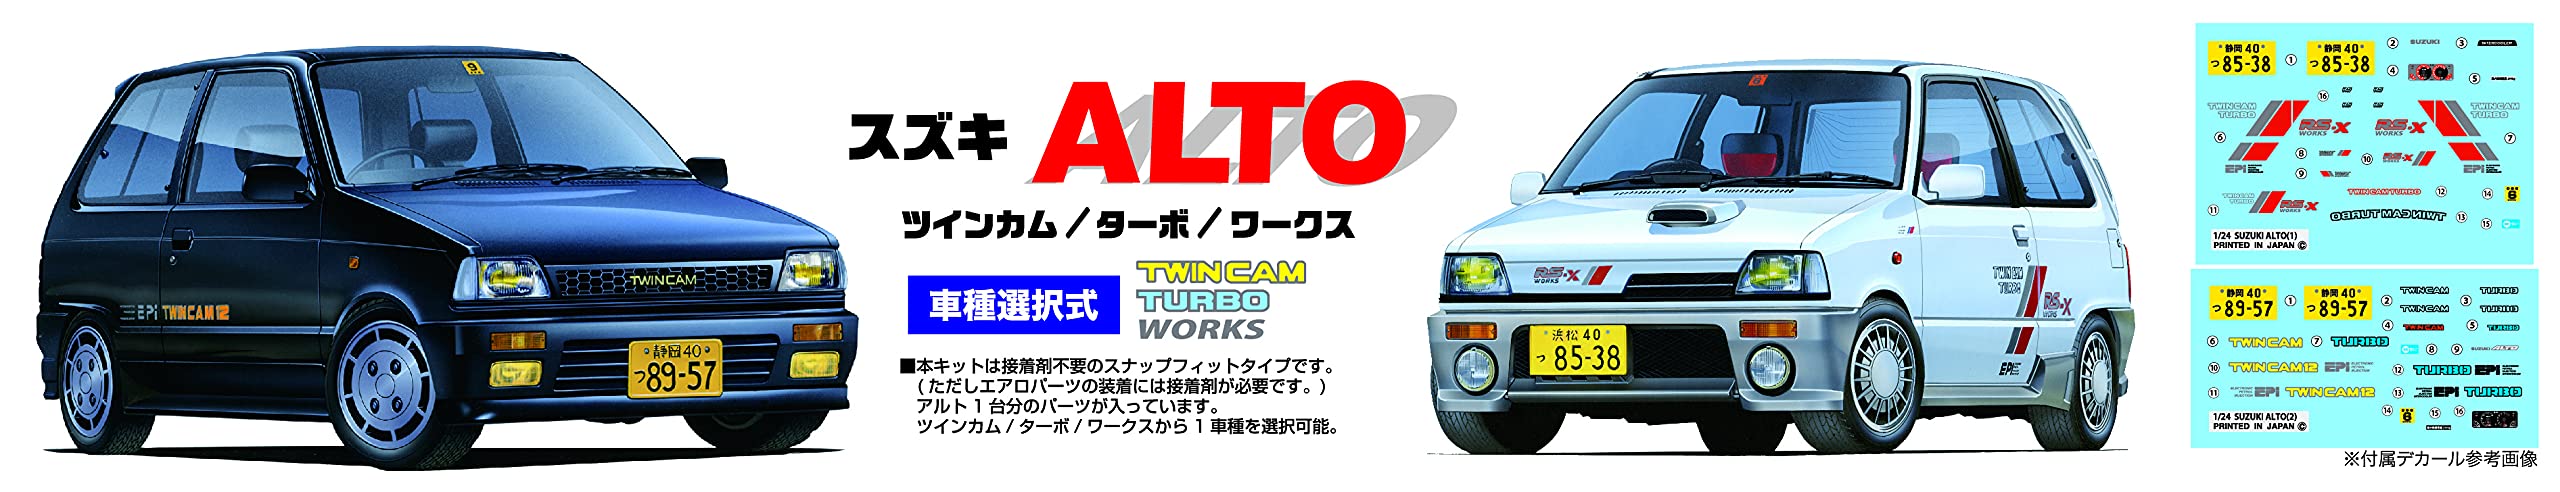 FUJIMI Inch Up 1/24 Suzuki Alto Twincam / Turbo / Works-Plastikmodell